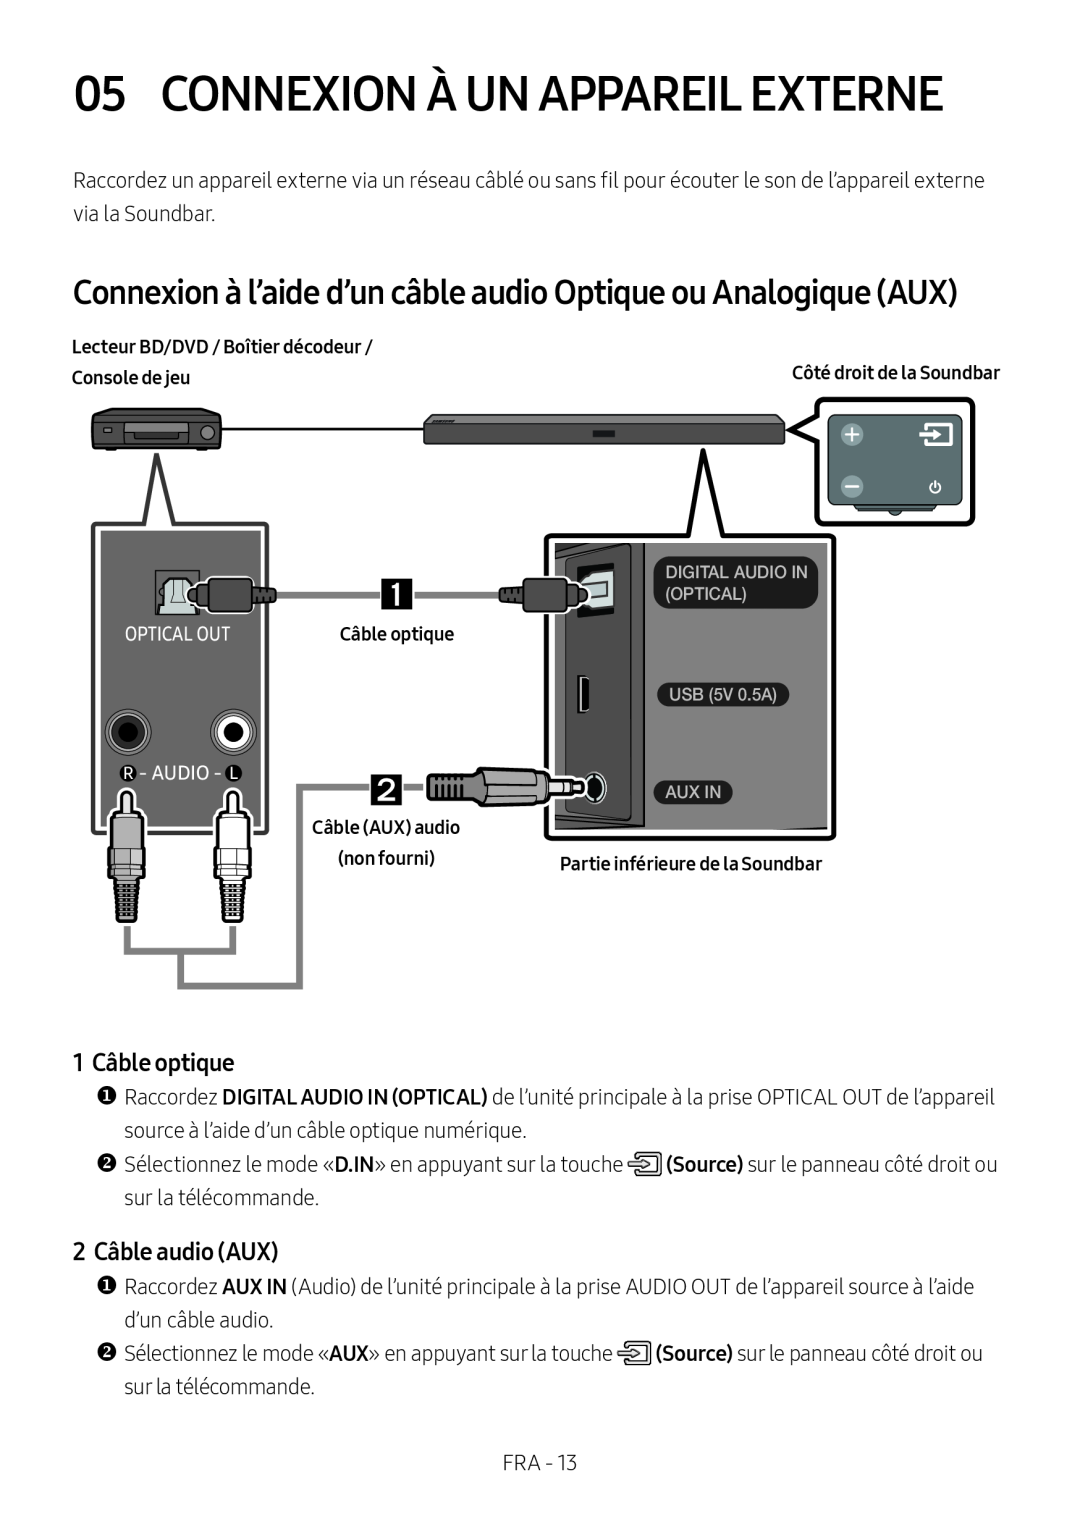 Samsung HW-M450/EN manual Connexion À Un Appareil Externe, Connexion à l’aide d’un câble audio Optique ou Analogique AUX 